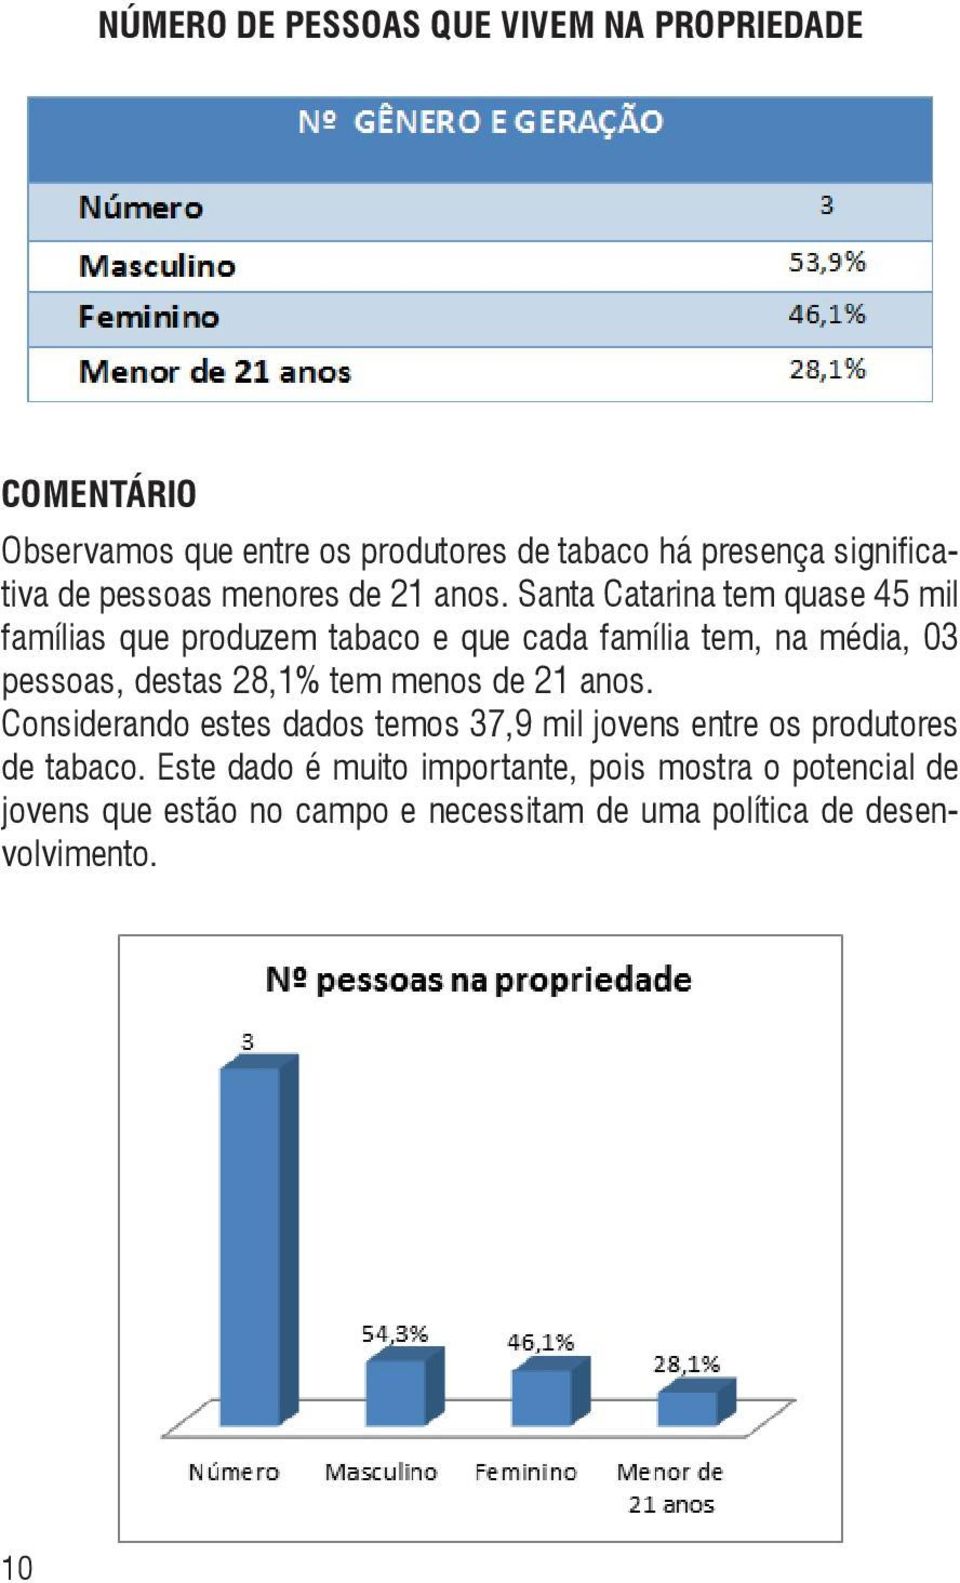 Santa Catarina tem quase 45 mil famílias que produzem tabaco e que cada família tem, na média, 03 pessoas, destas 28,1% tem